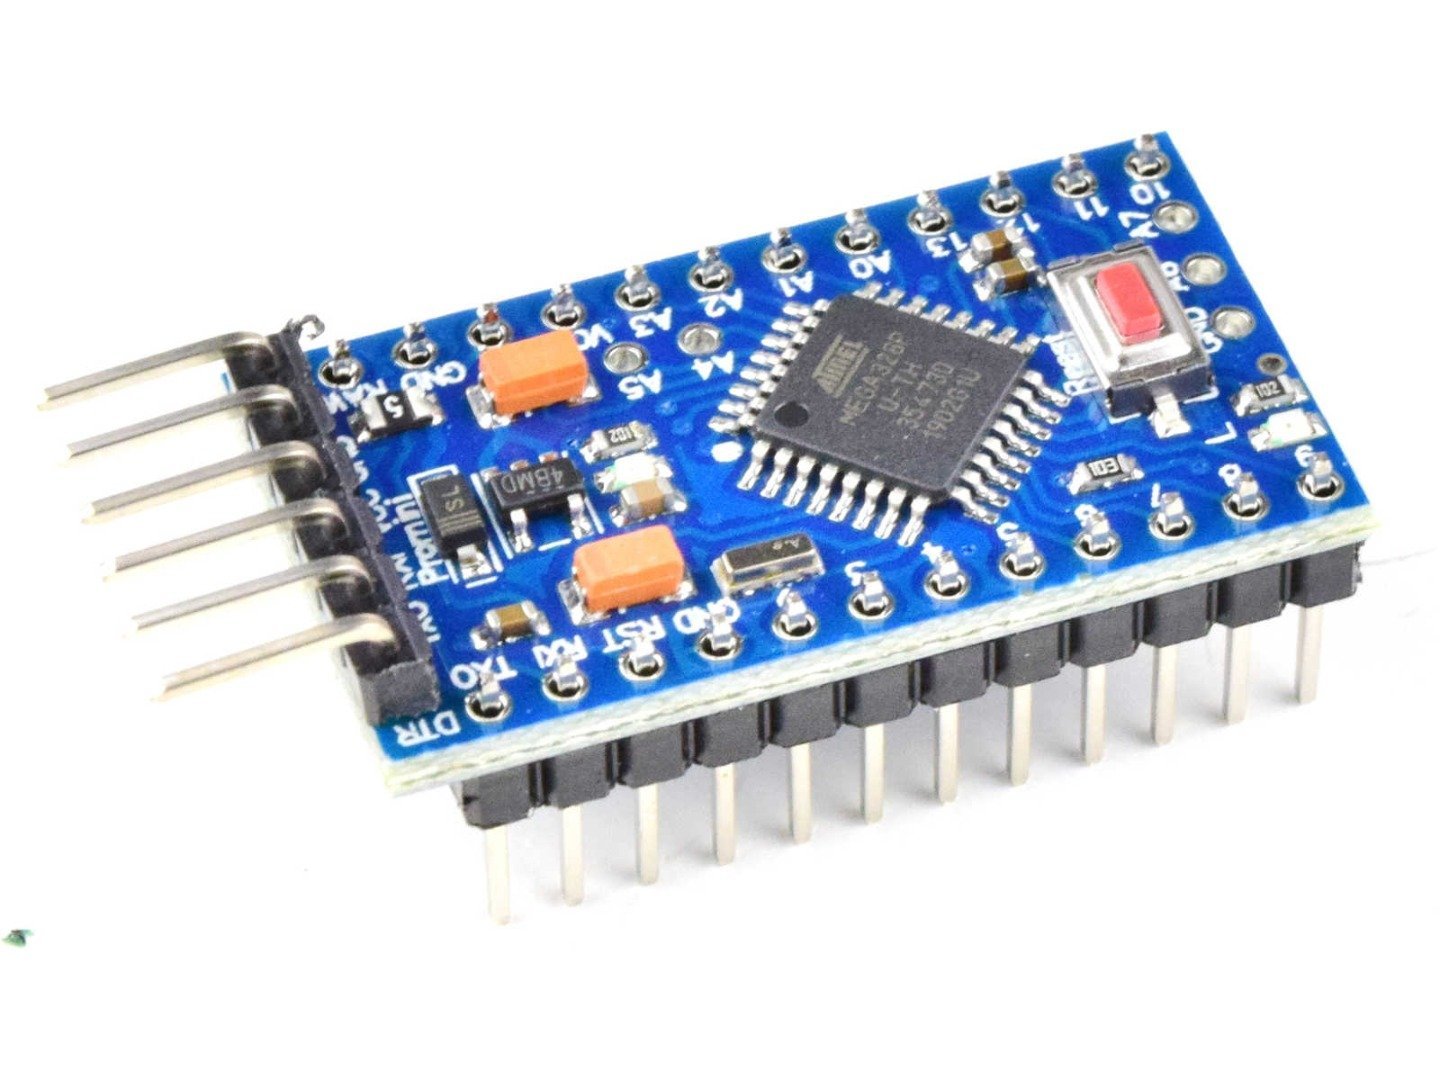 Pro Mini module ATmega328P 3.3V, 8MHz (100% compatible with Arduino) 8